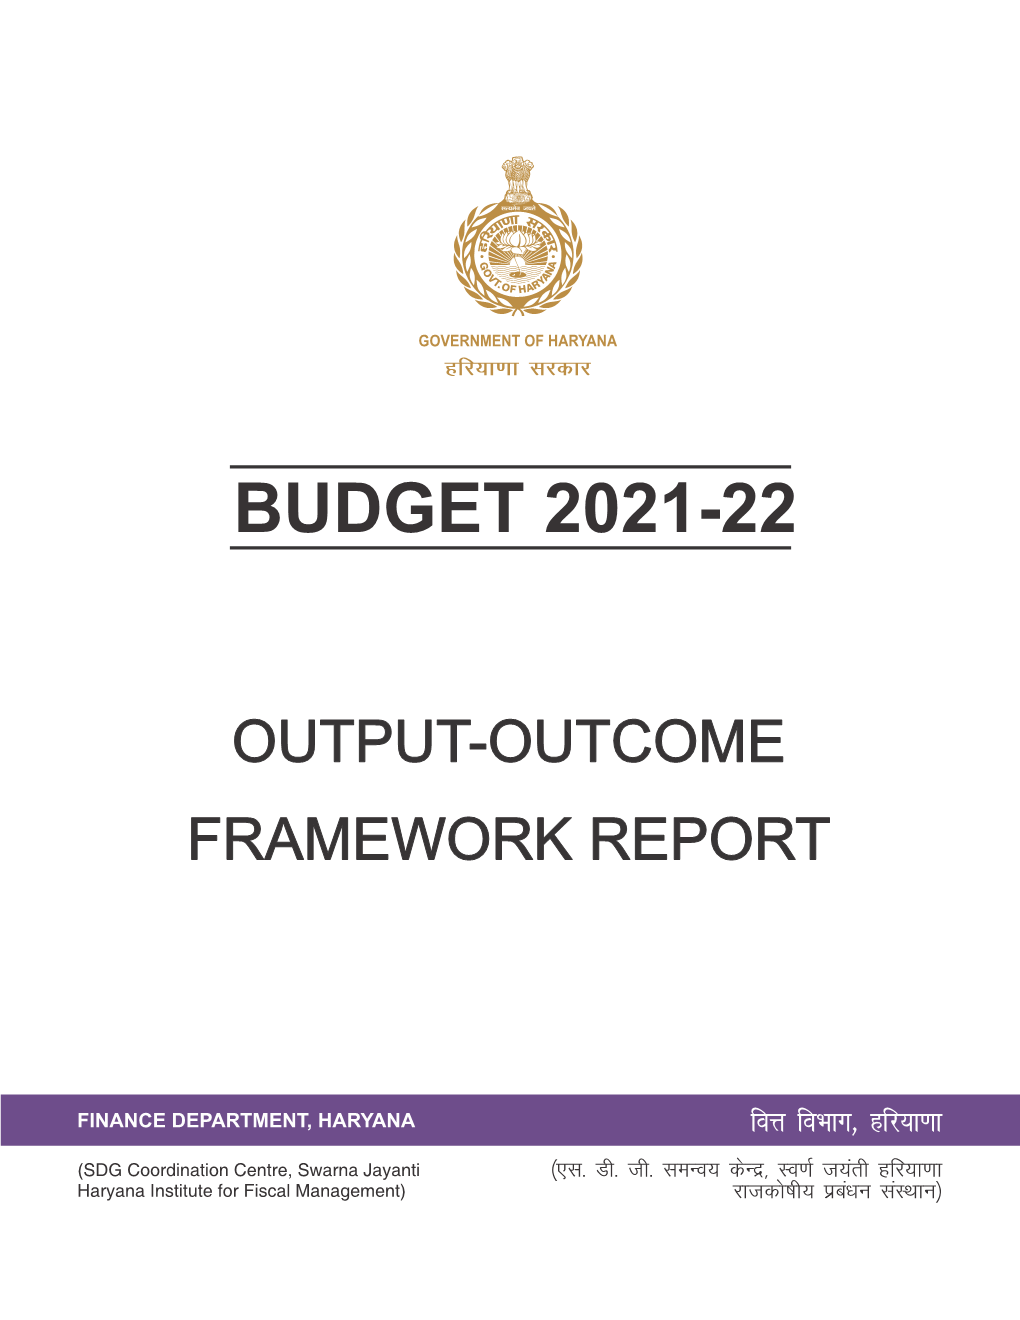 Output-Outcome Framework Report 2021-22